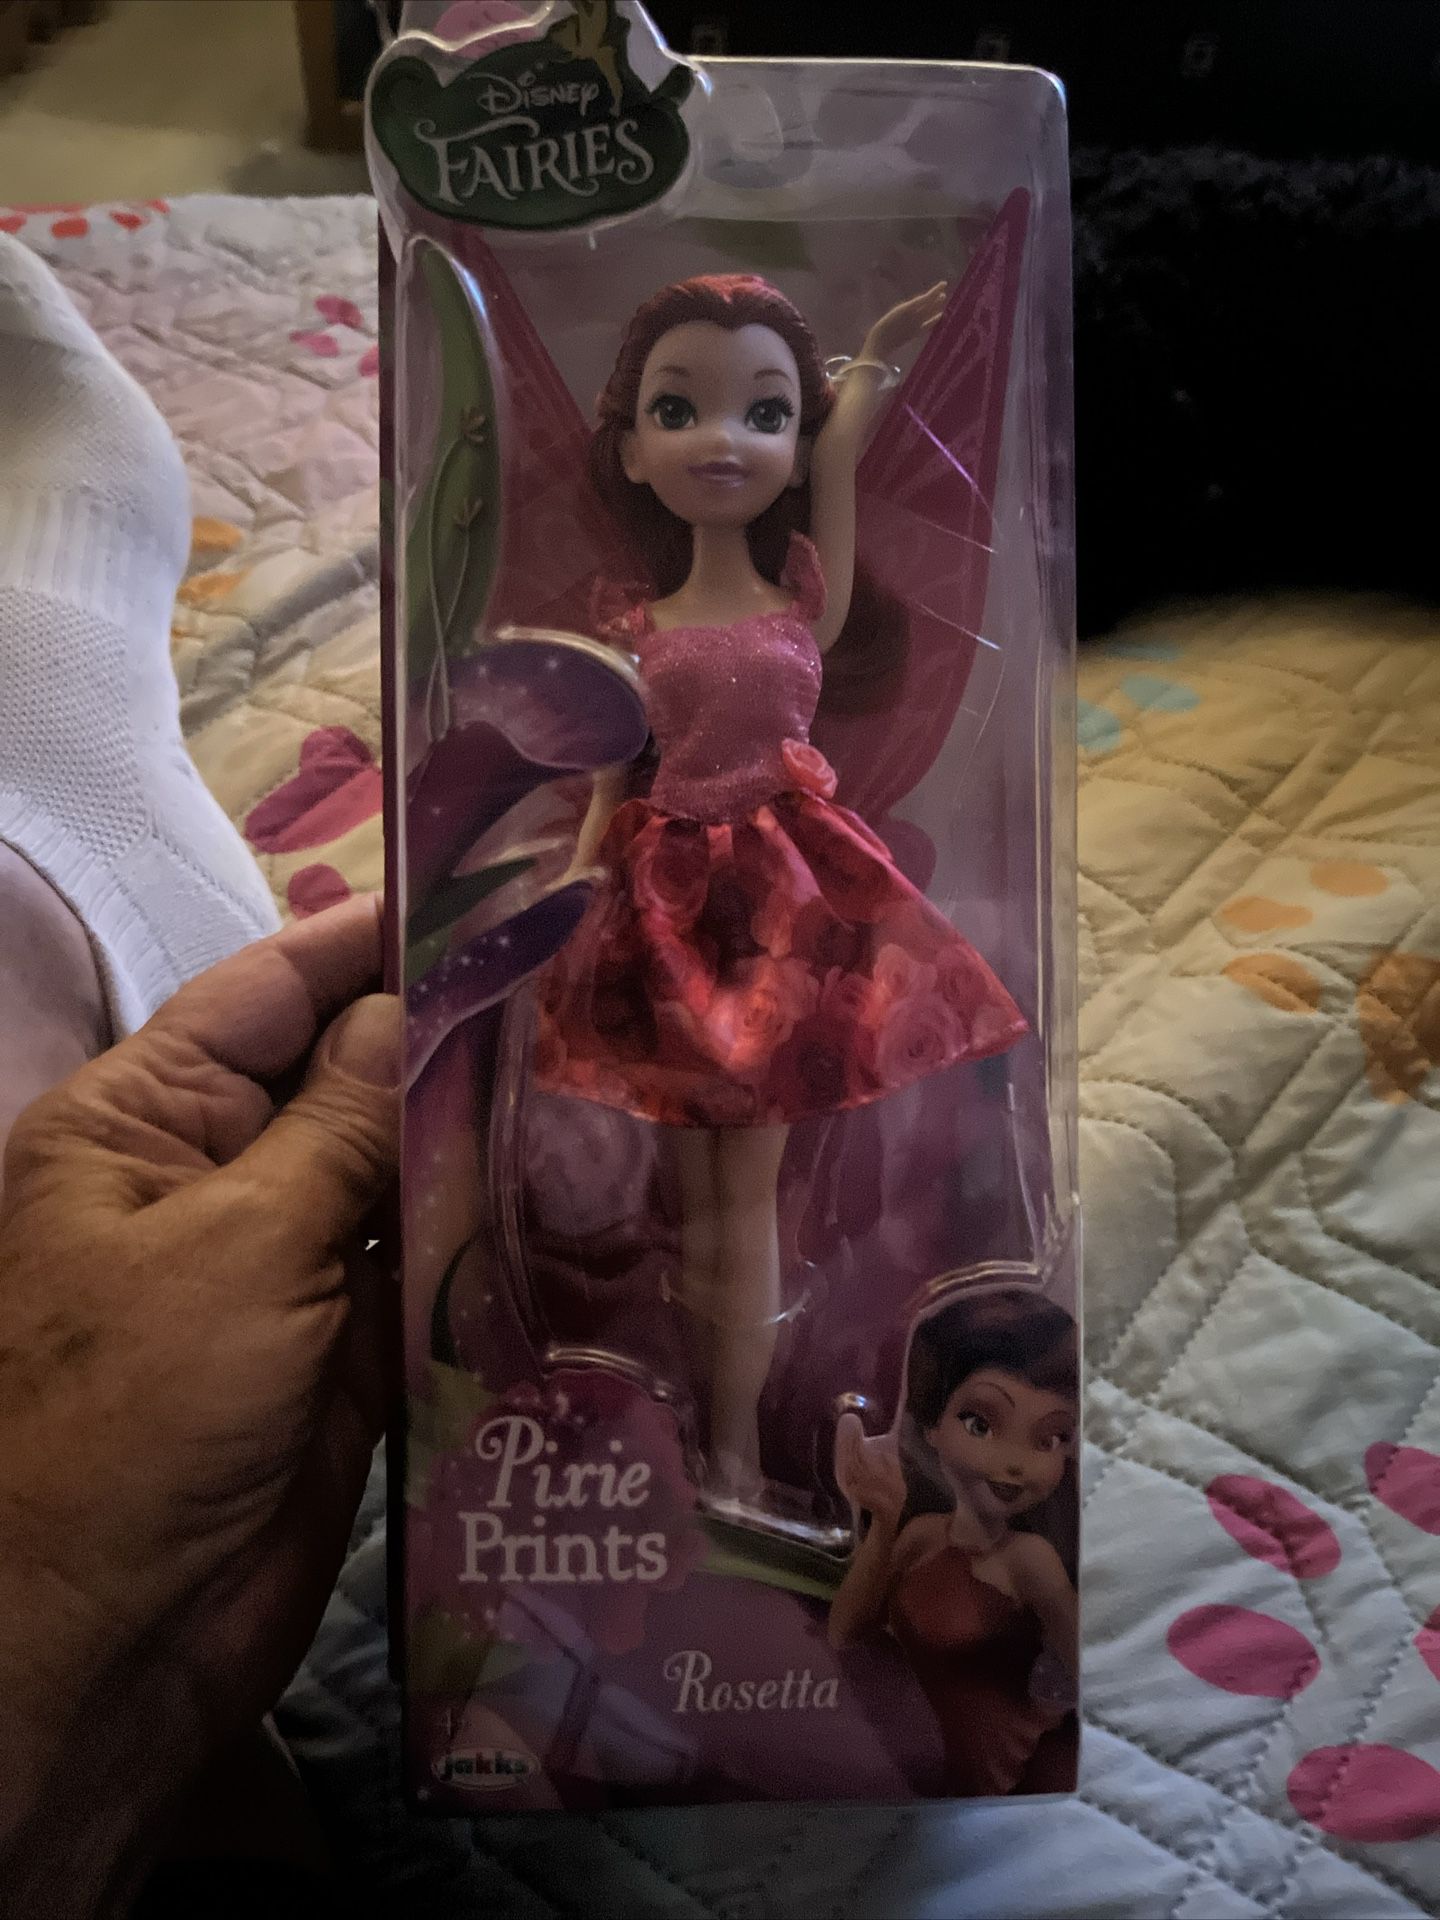 Disney Fairies Pixie Prints Rosetta